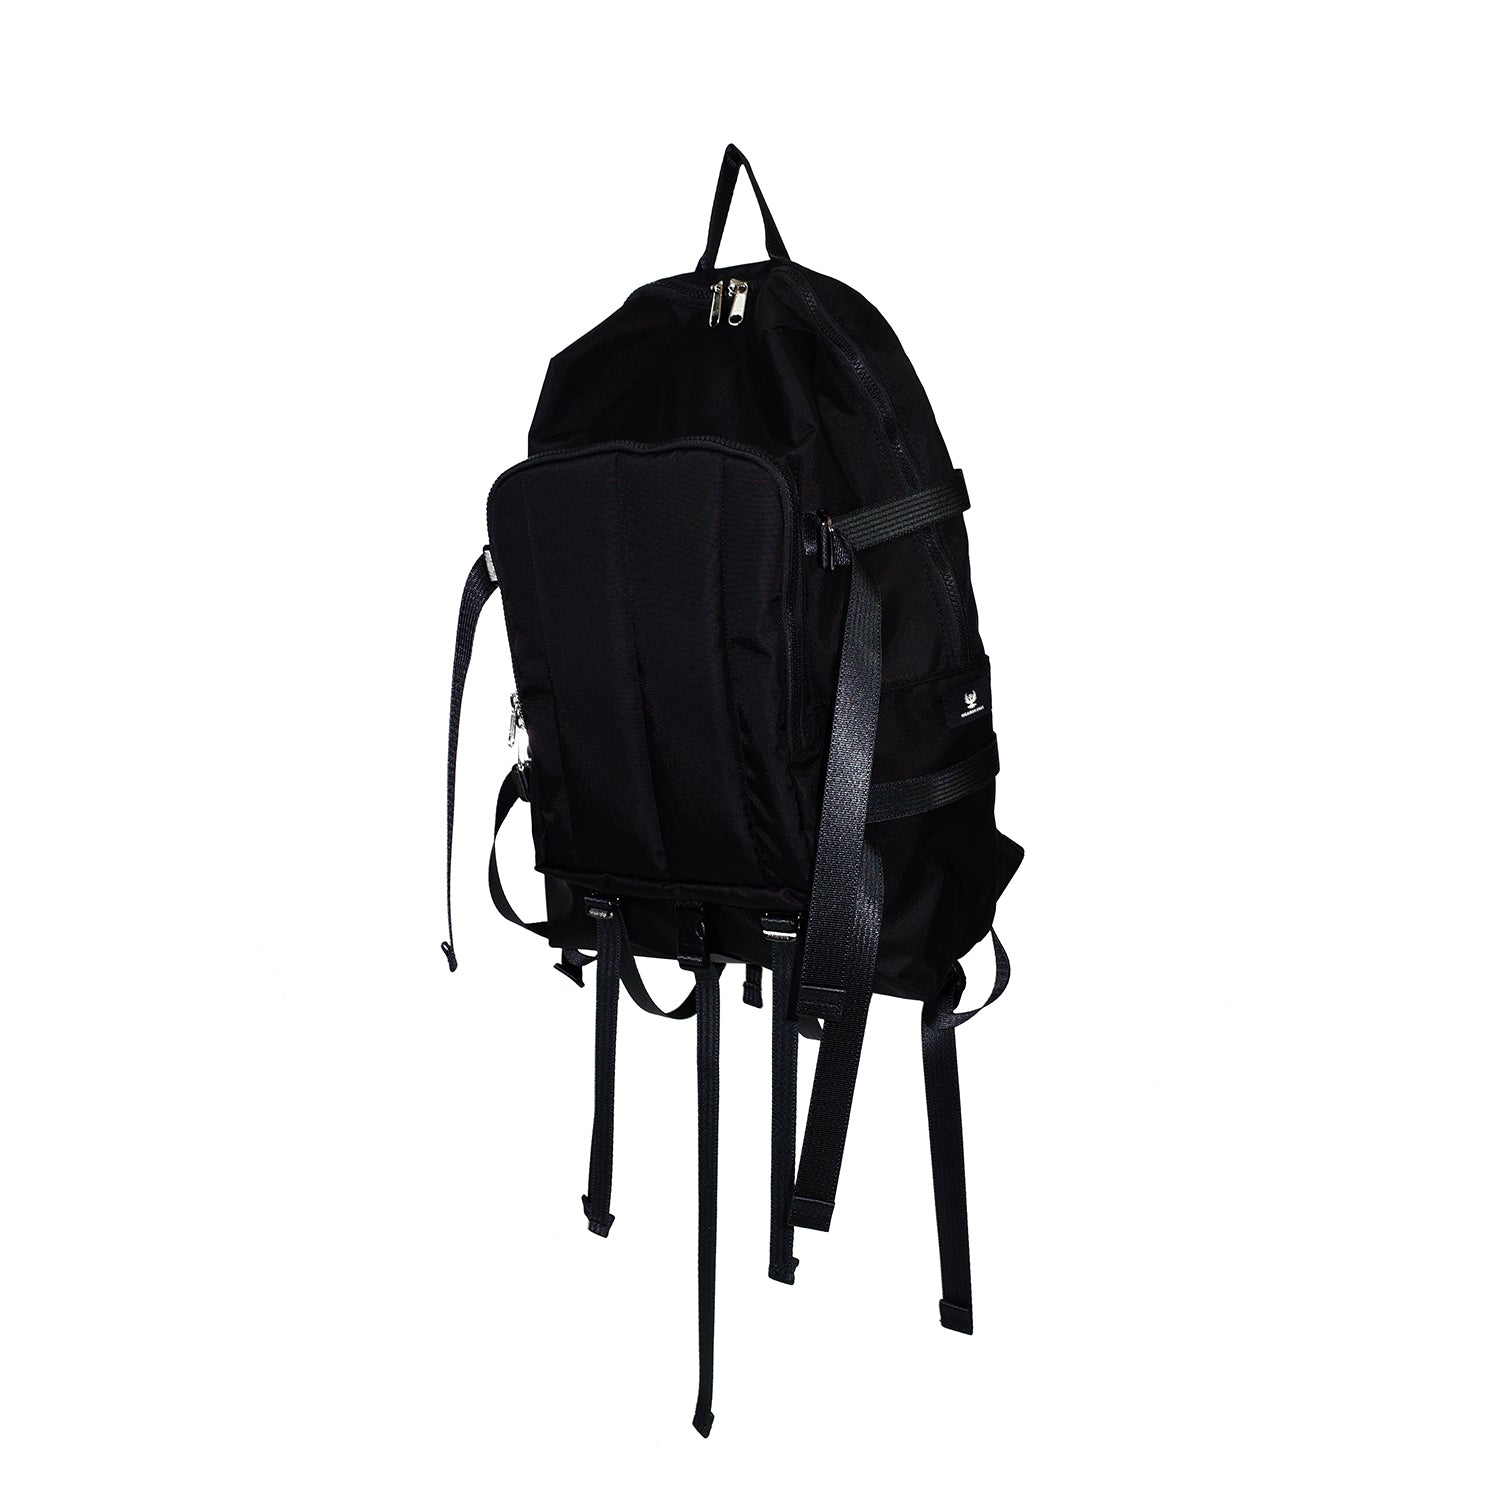 パデッドユーティリティーバッグ / Padded Utility Backpack – 60